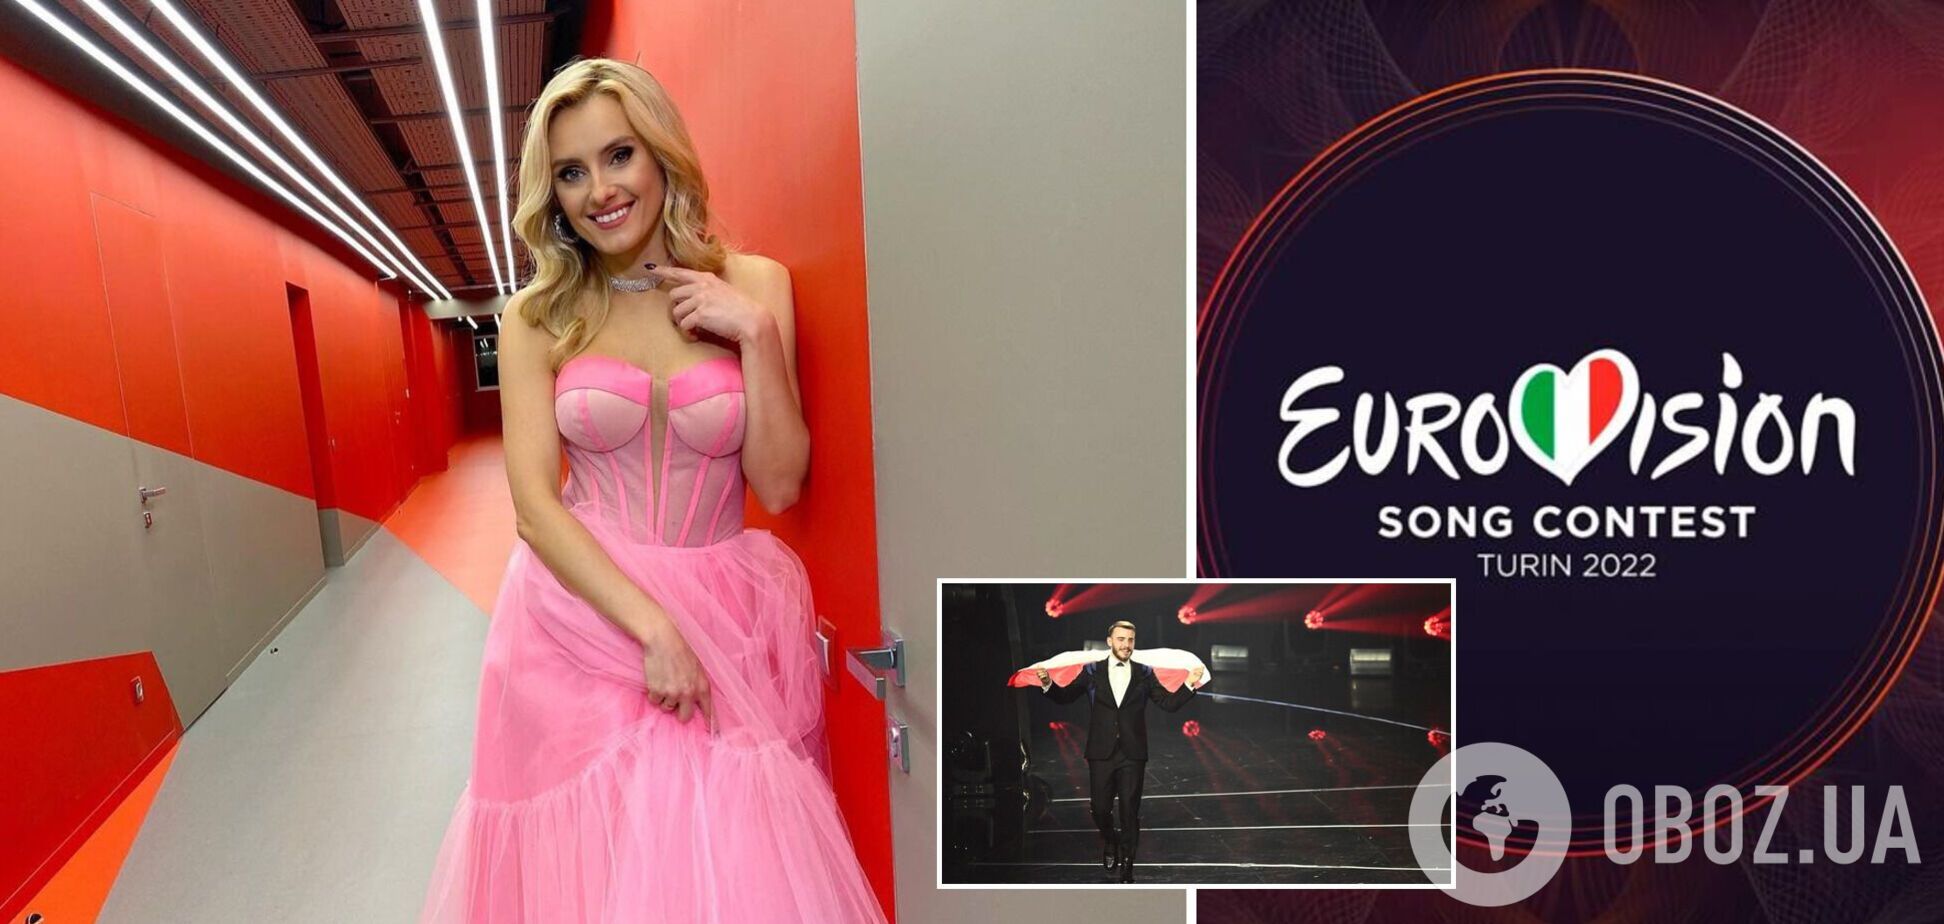 Ирина Федишин заявила о травле на Евровидении: включайте здравый смысл! Жюри голосует профессионально, зрители – иначе